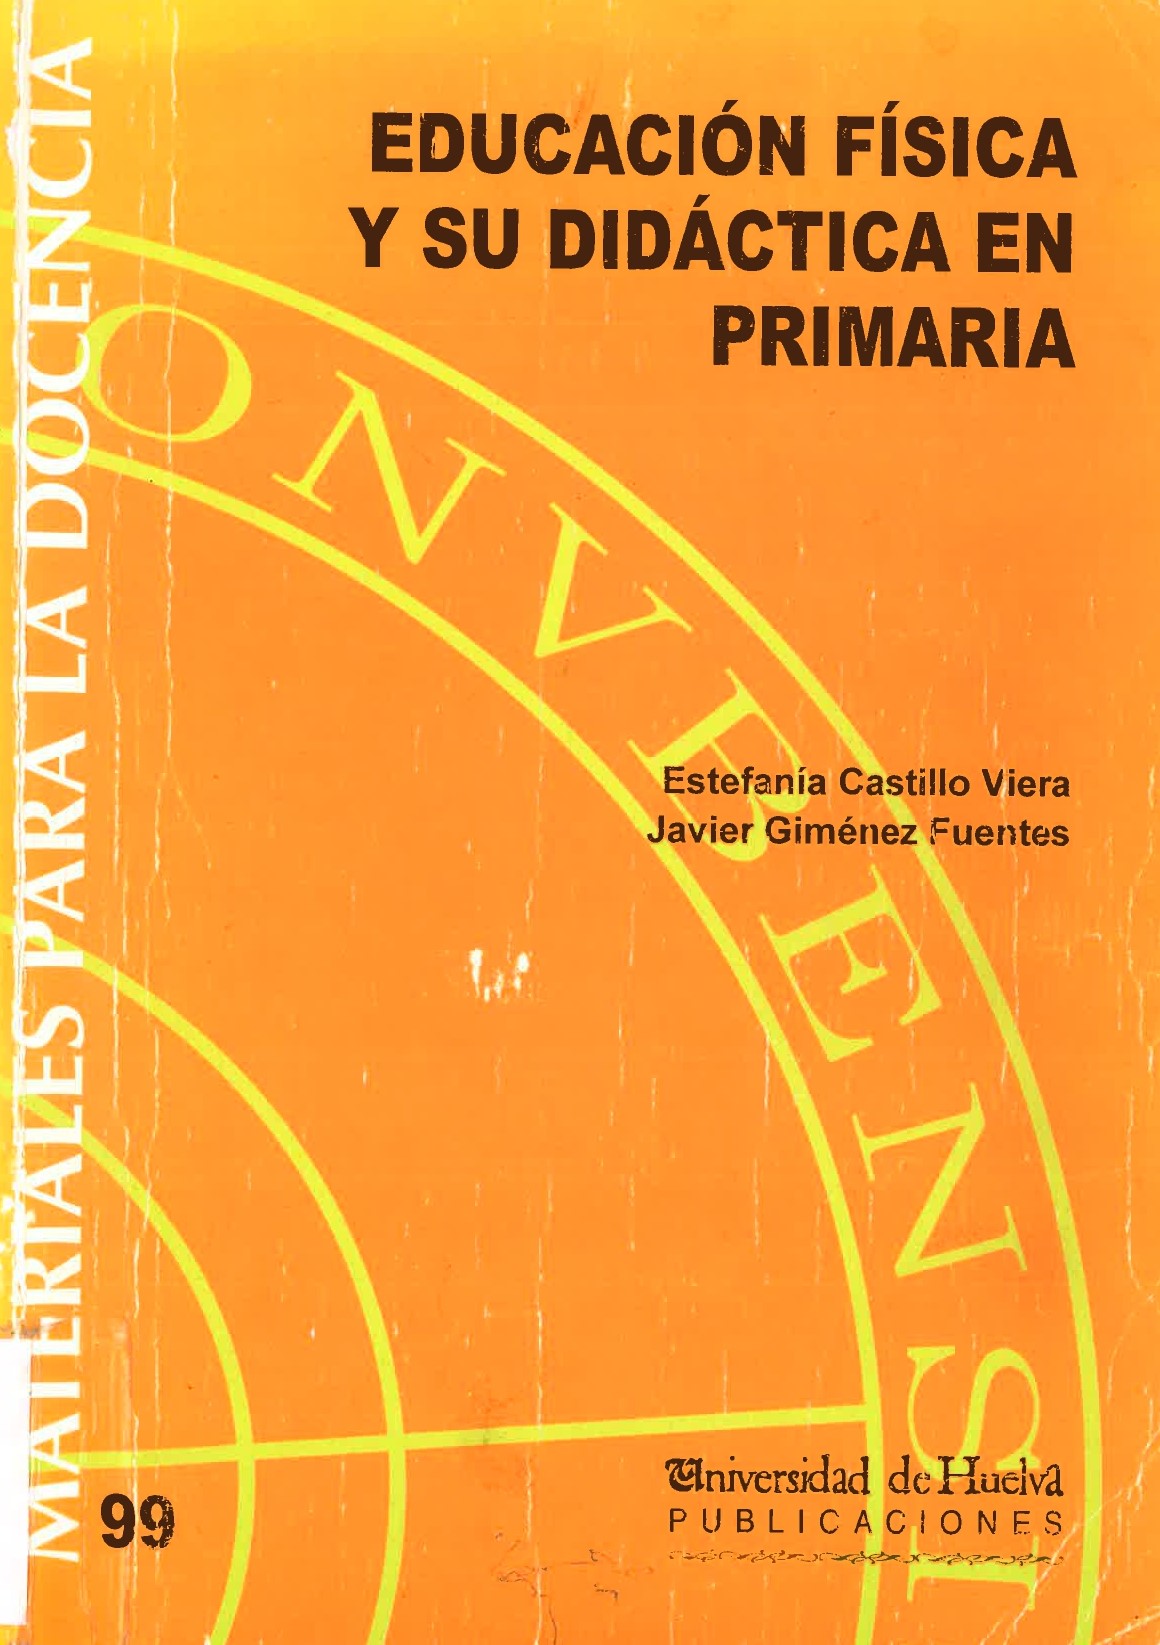 Imagen de portada del libro Educación Física y su Didáctica en Primaria